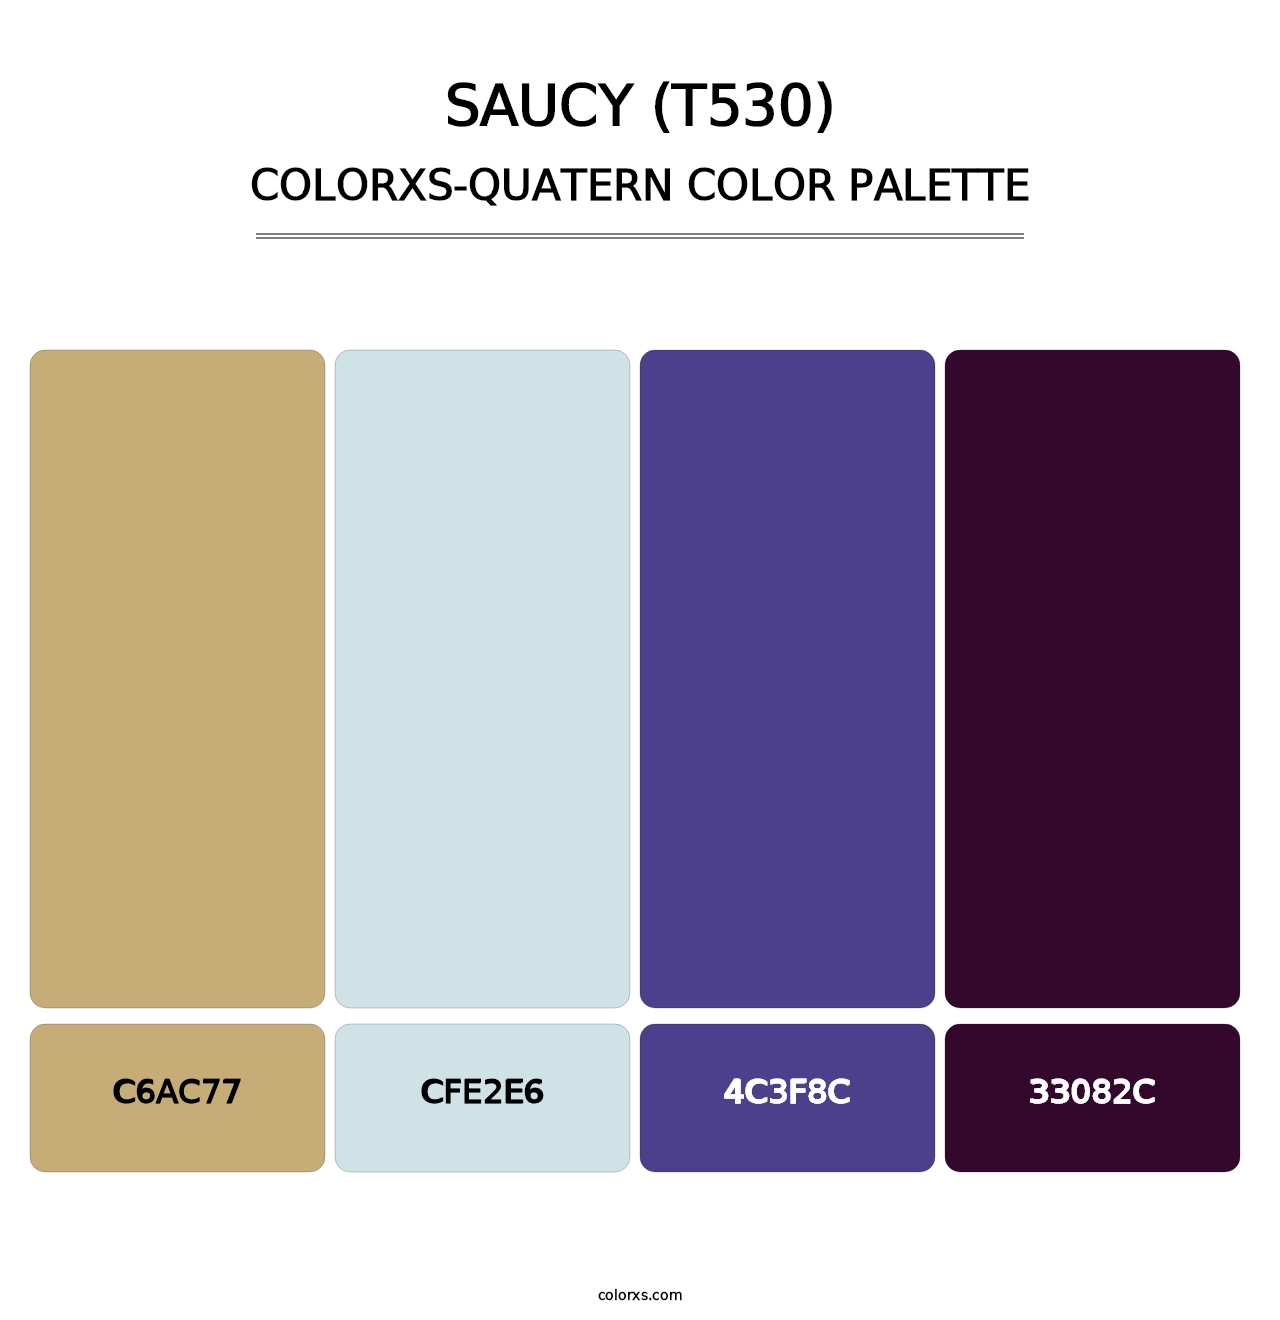 Saucy (T530) - Colorxs Quatern Palette